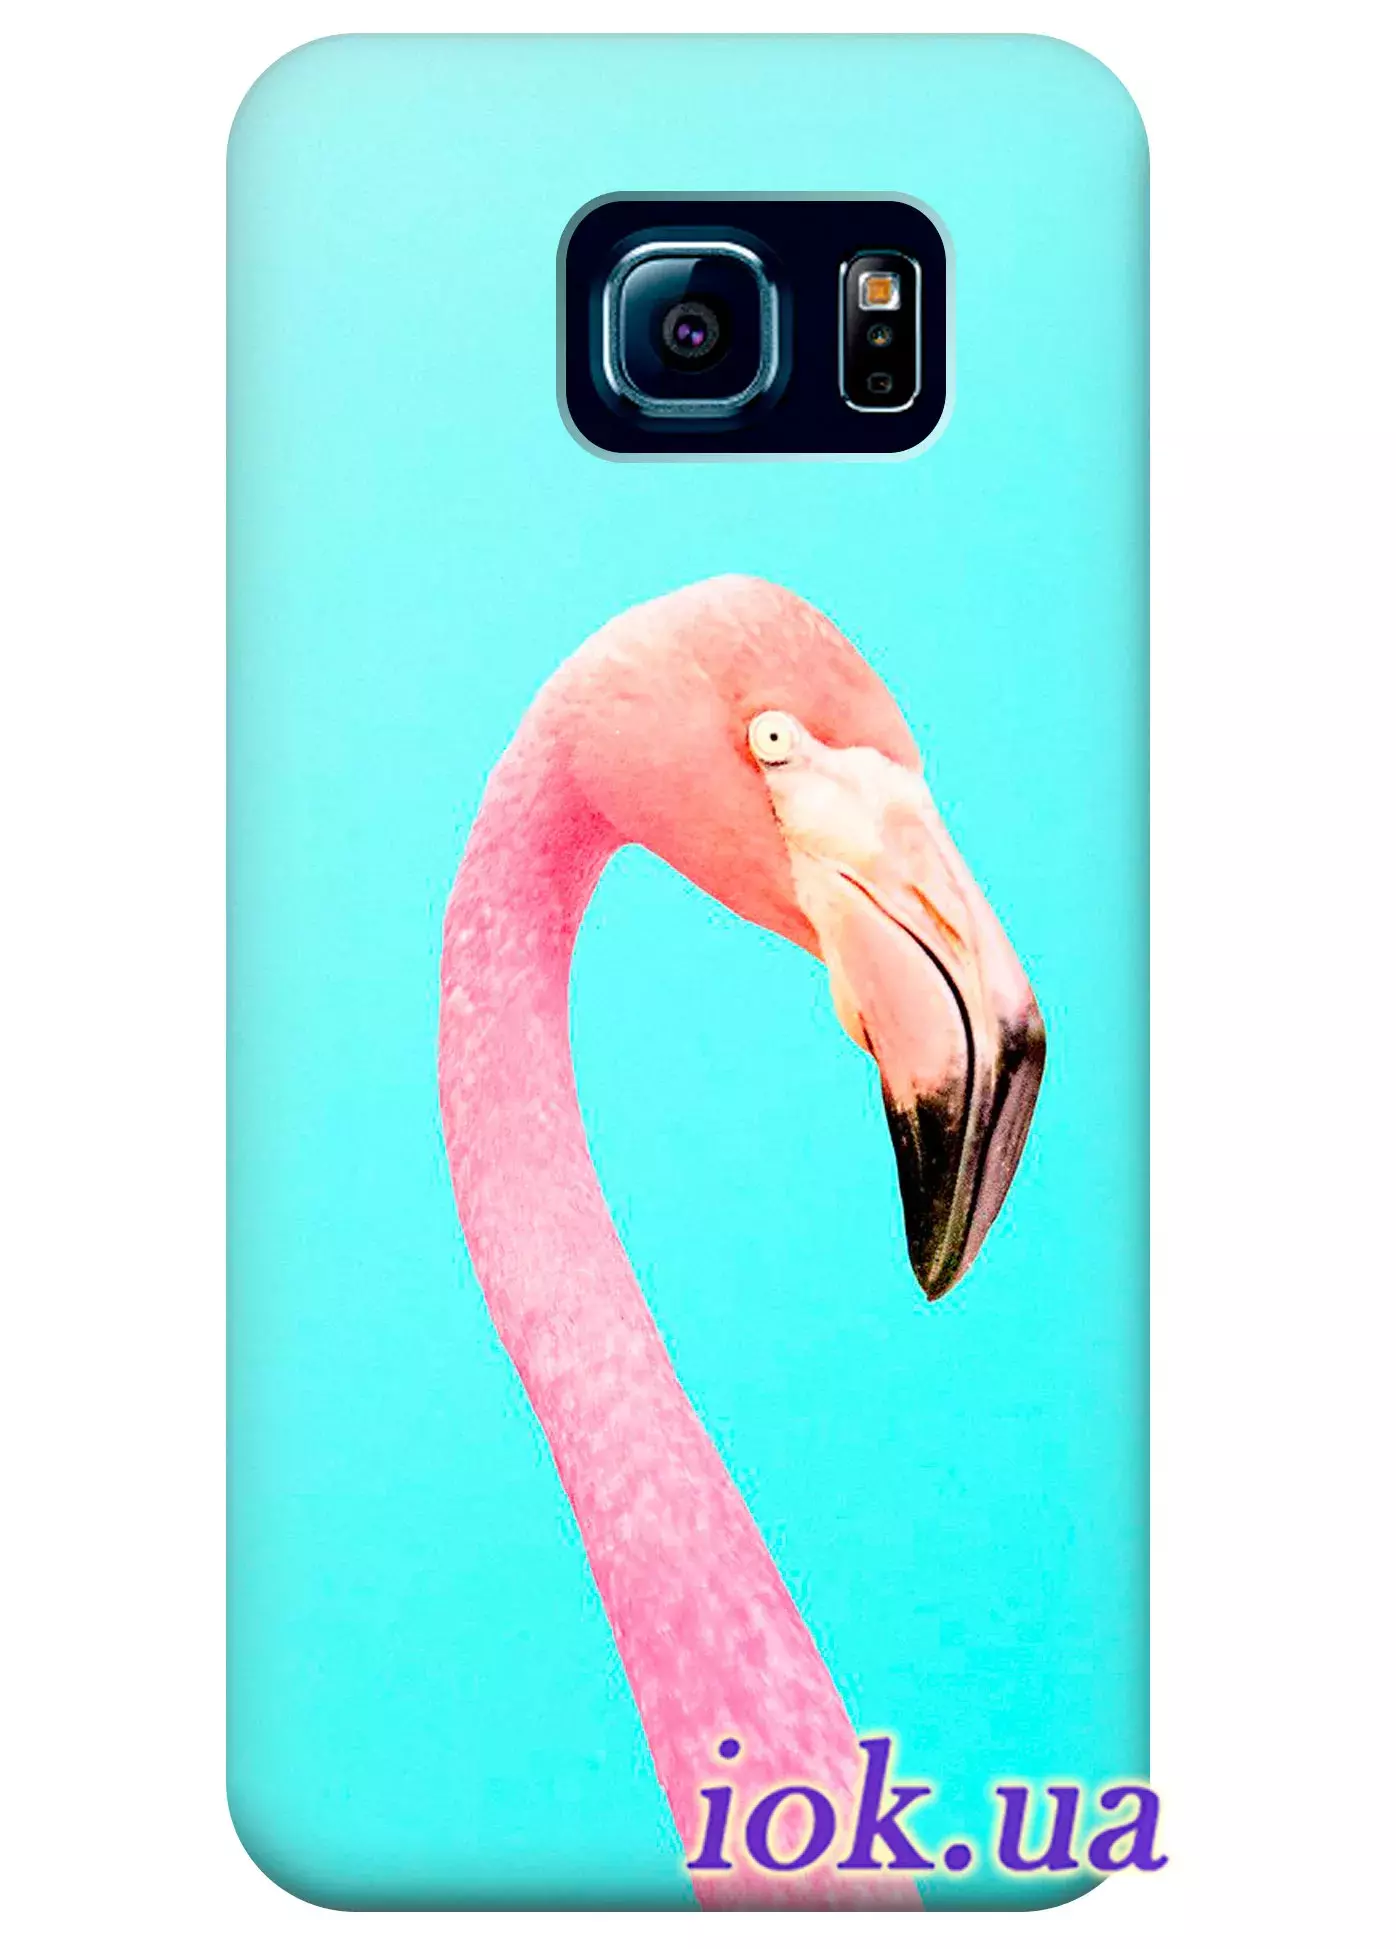 Чехол для Galaxy S6 Edge Plus - Яркий фламинго